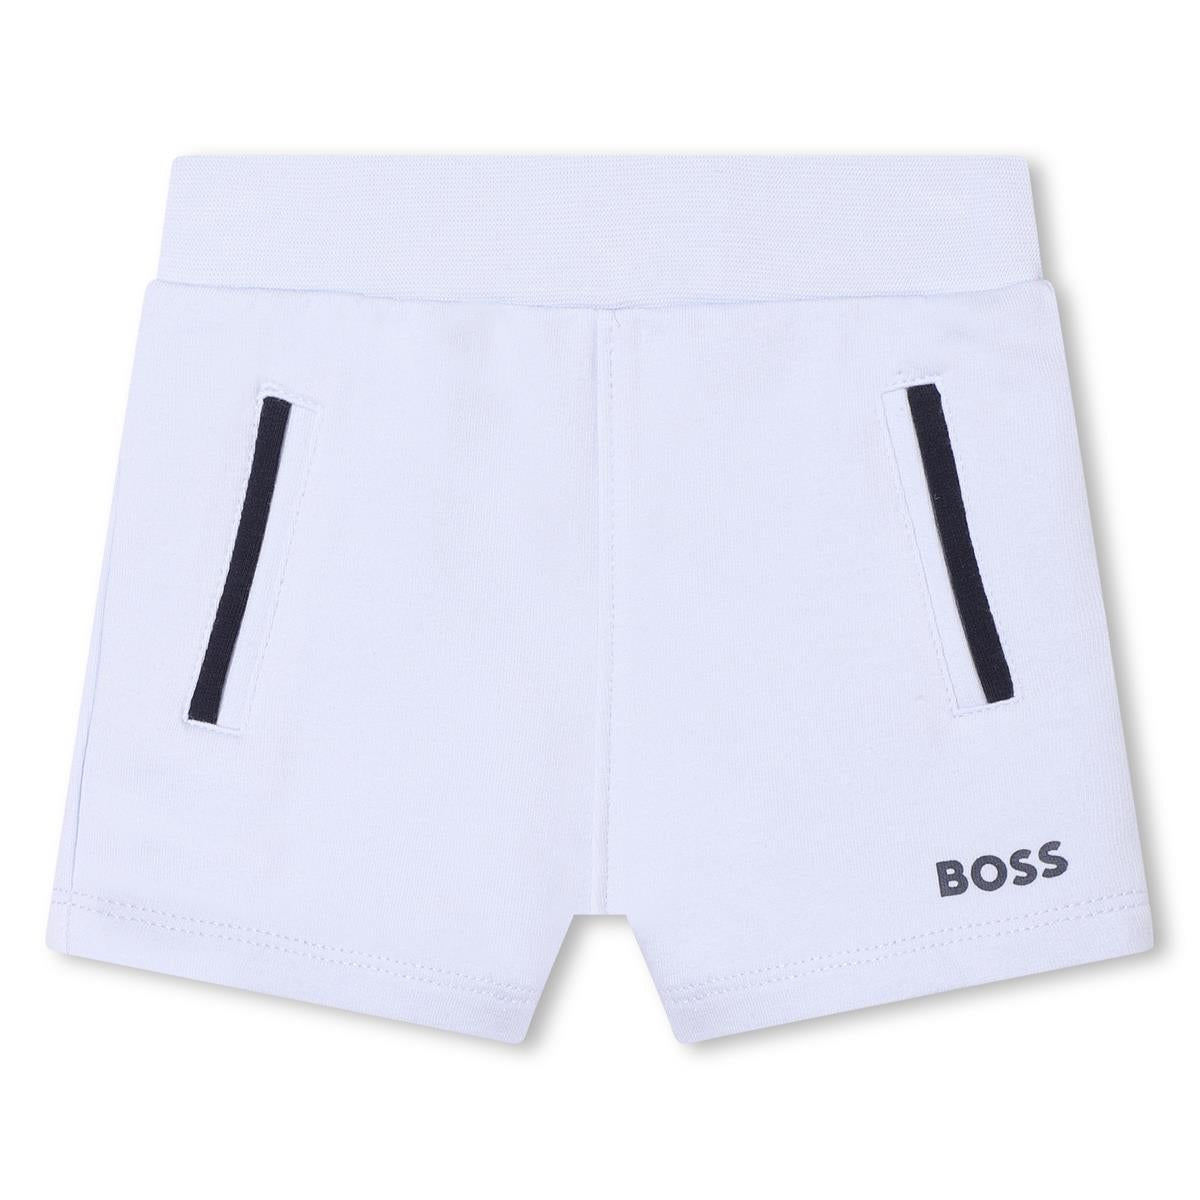 Baby Boys White Shorts